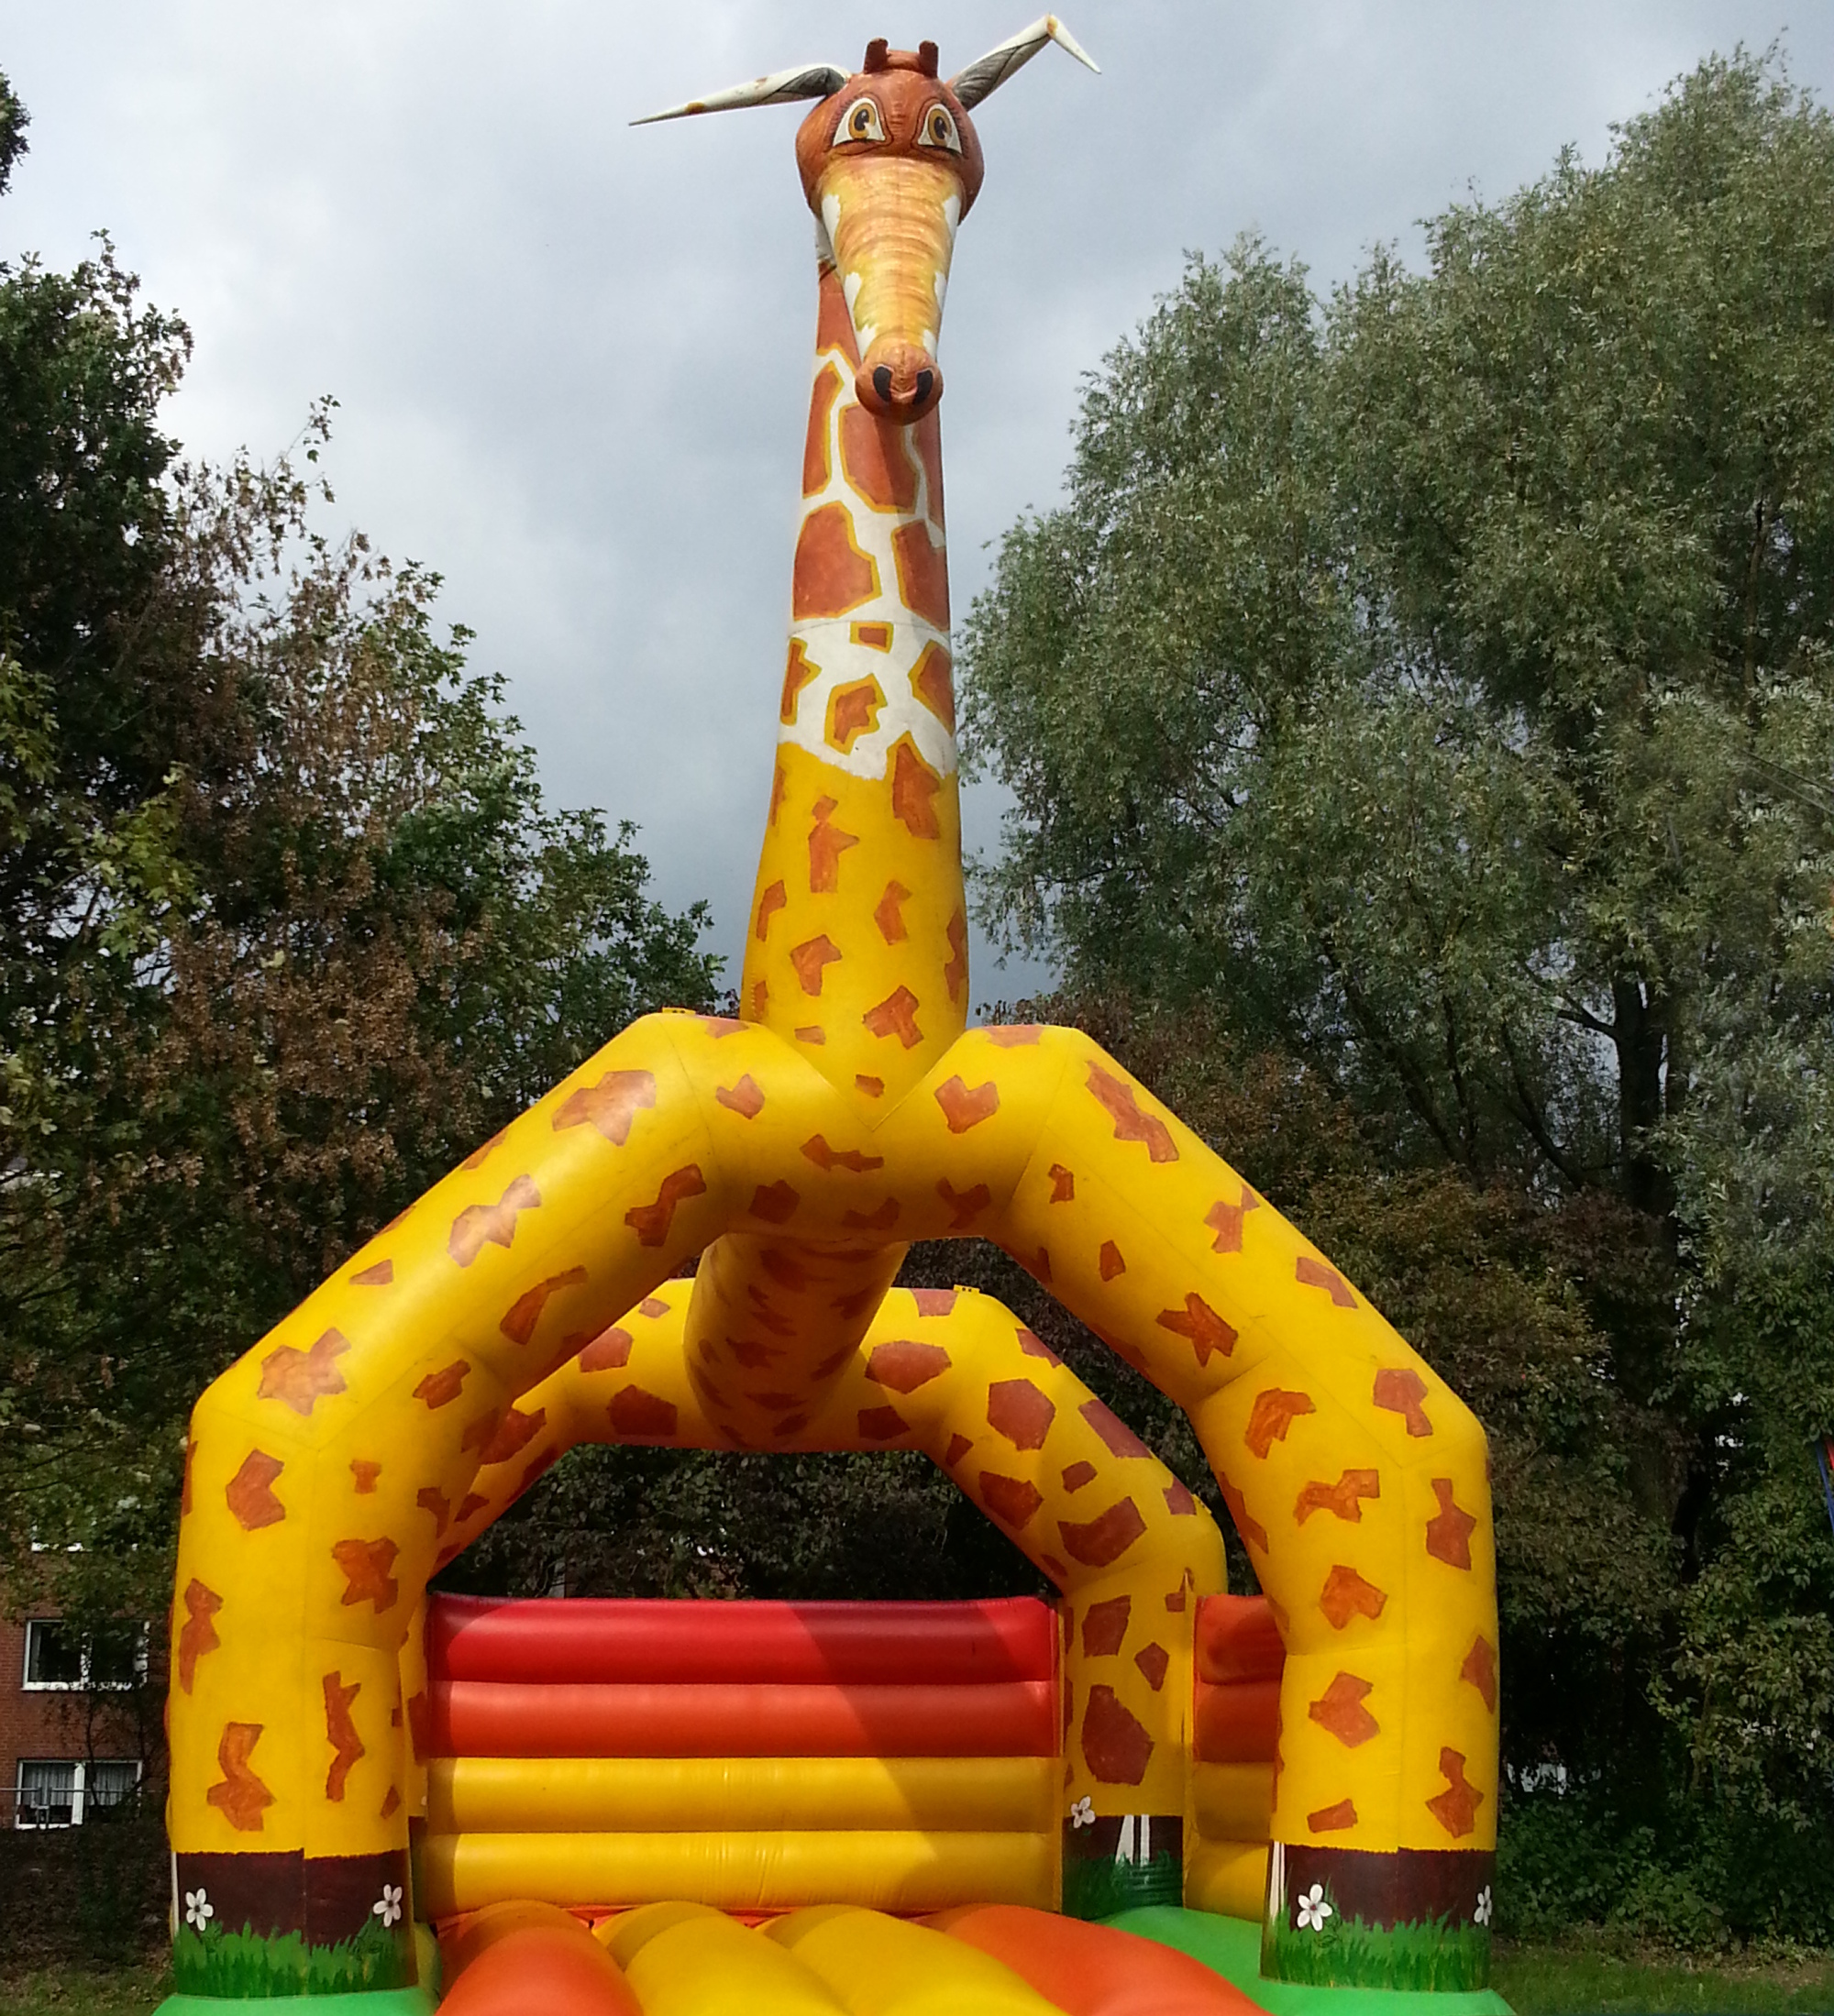 Hüpfburg Giraffe - Barkhofen